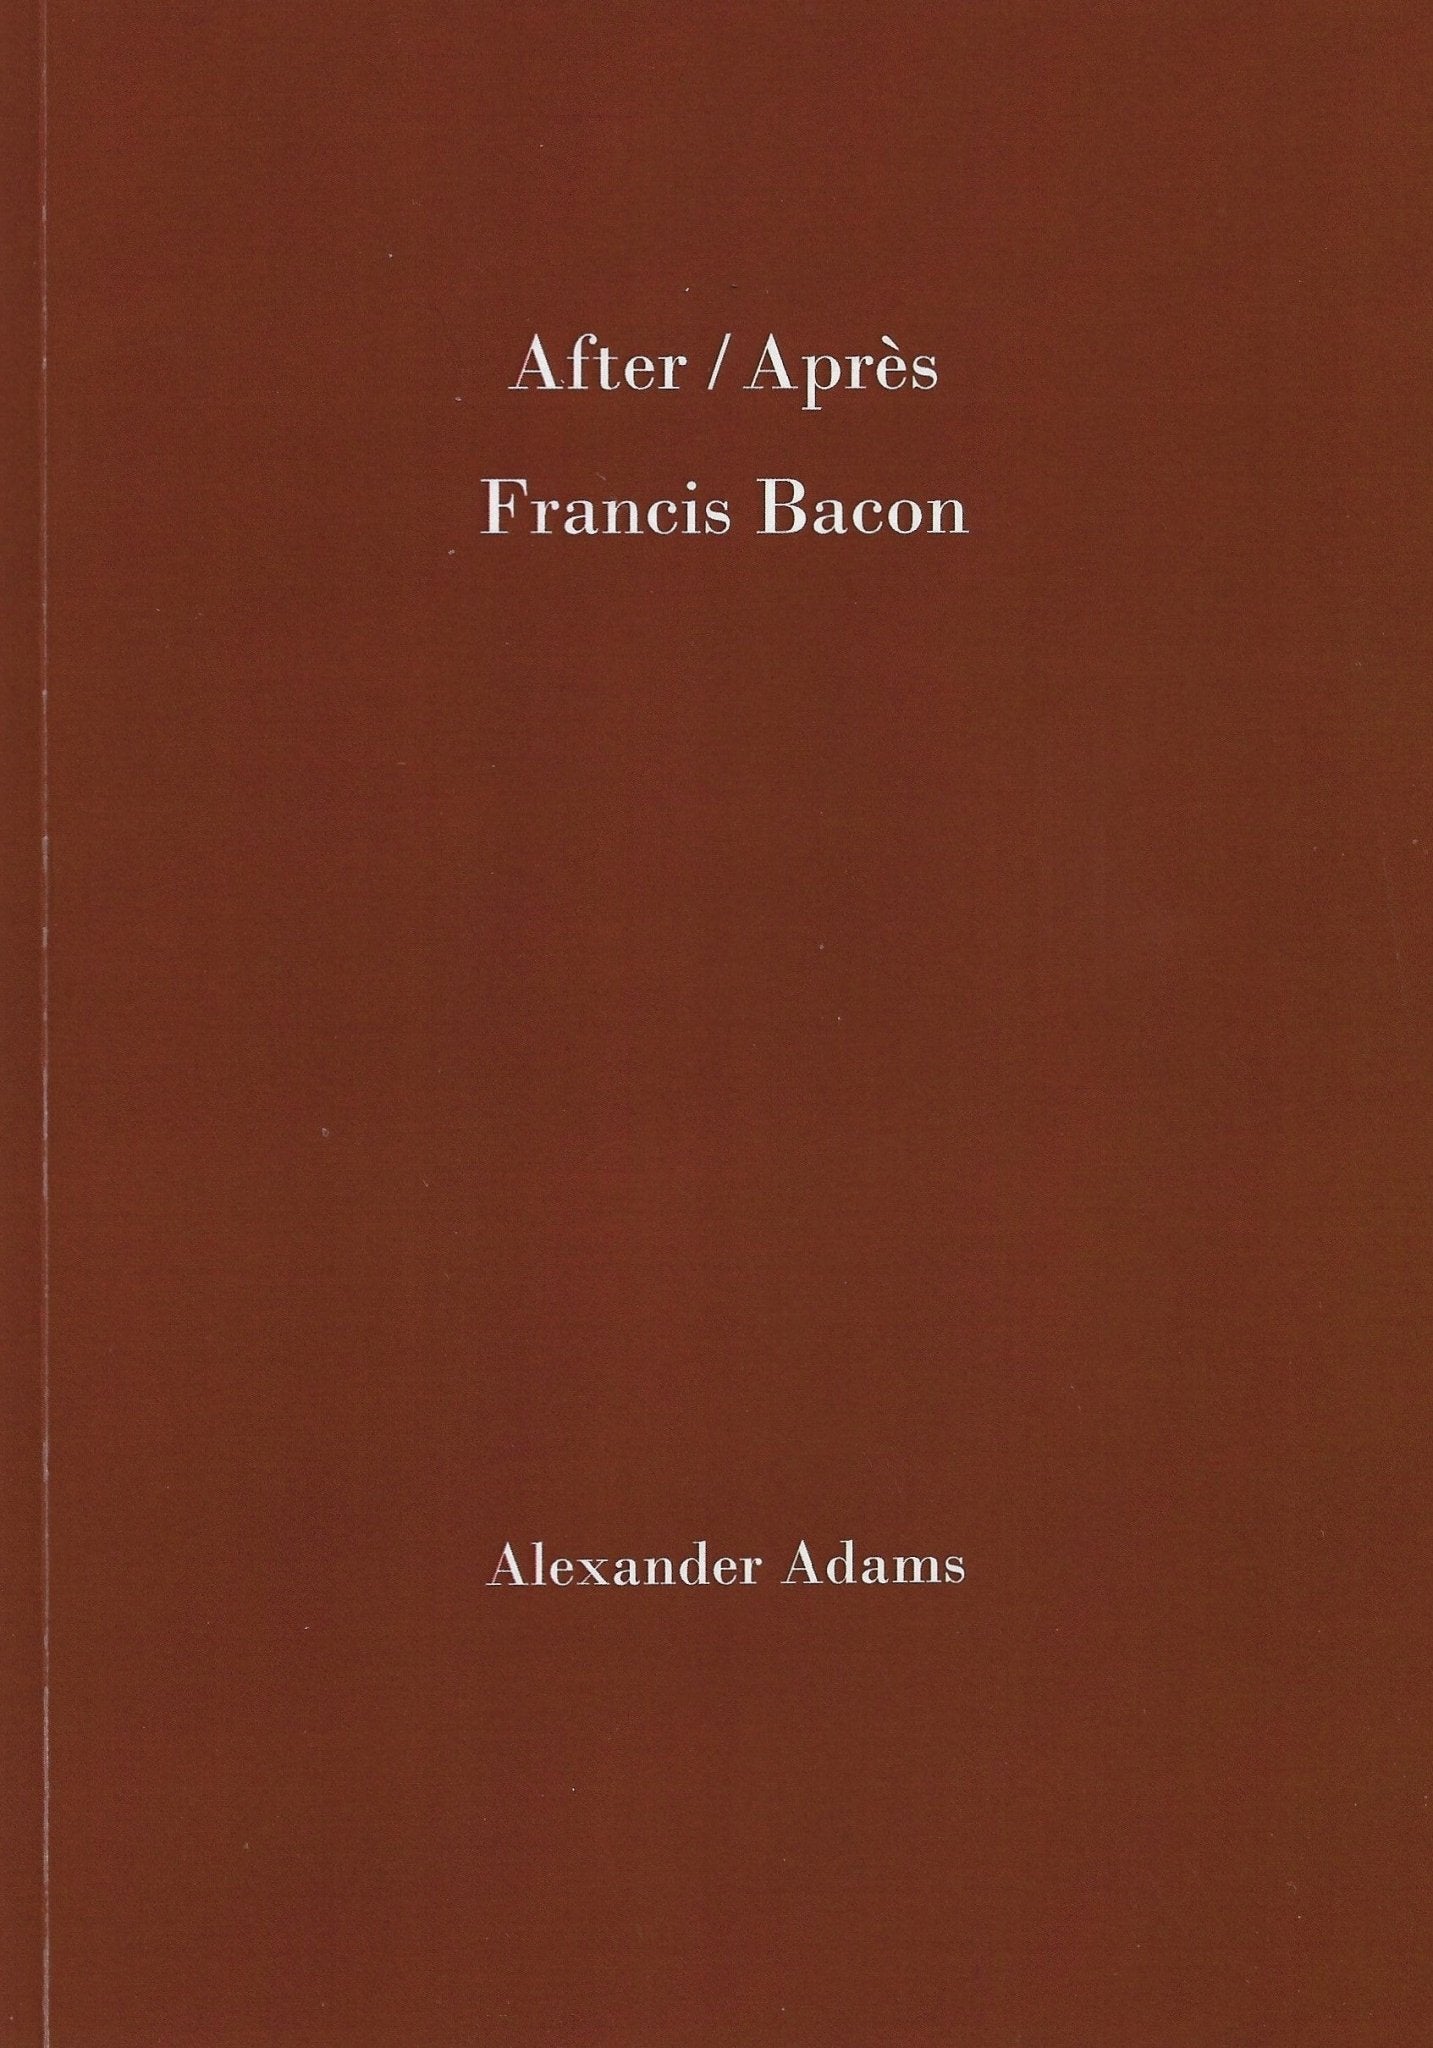 After/Apres Francis Bacon